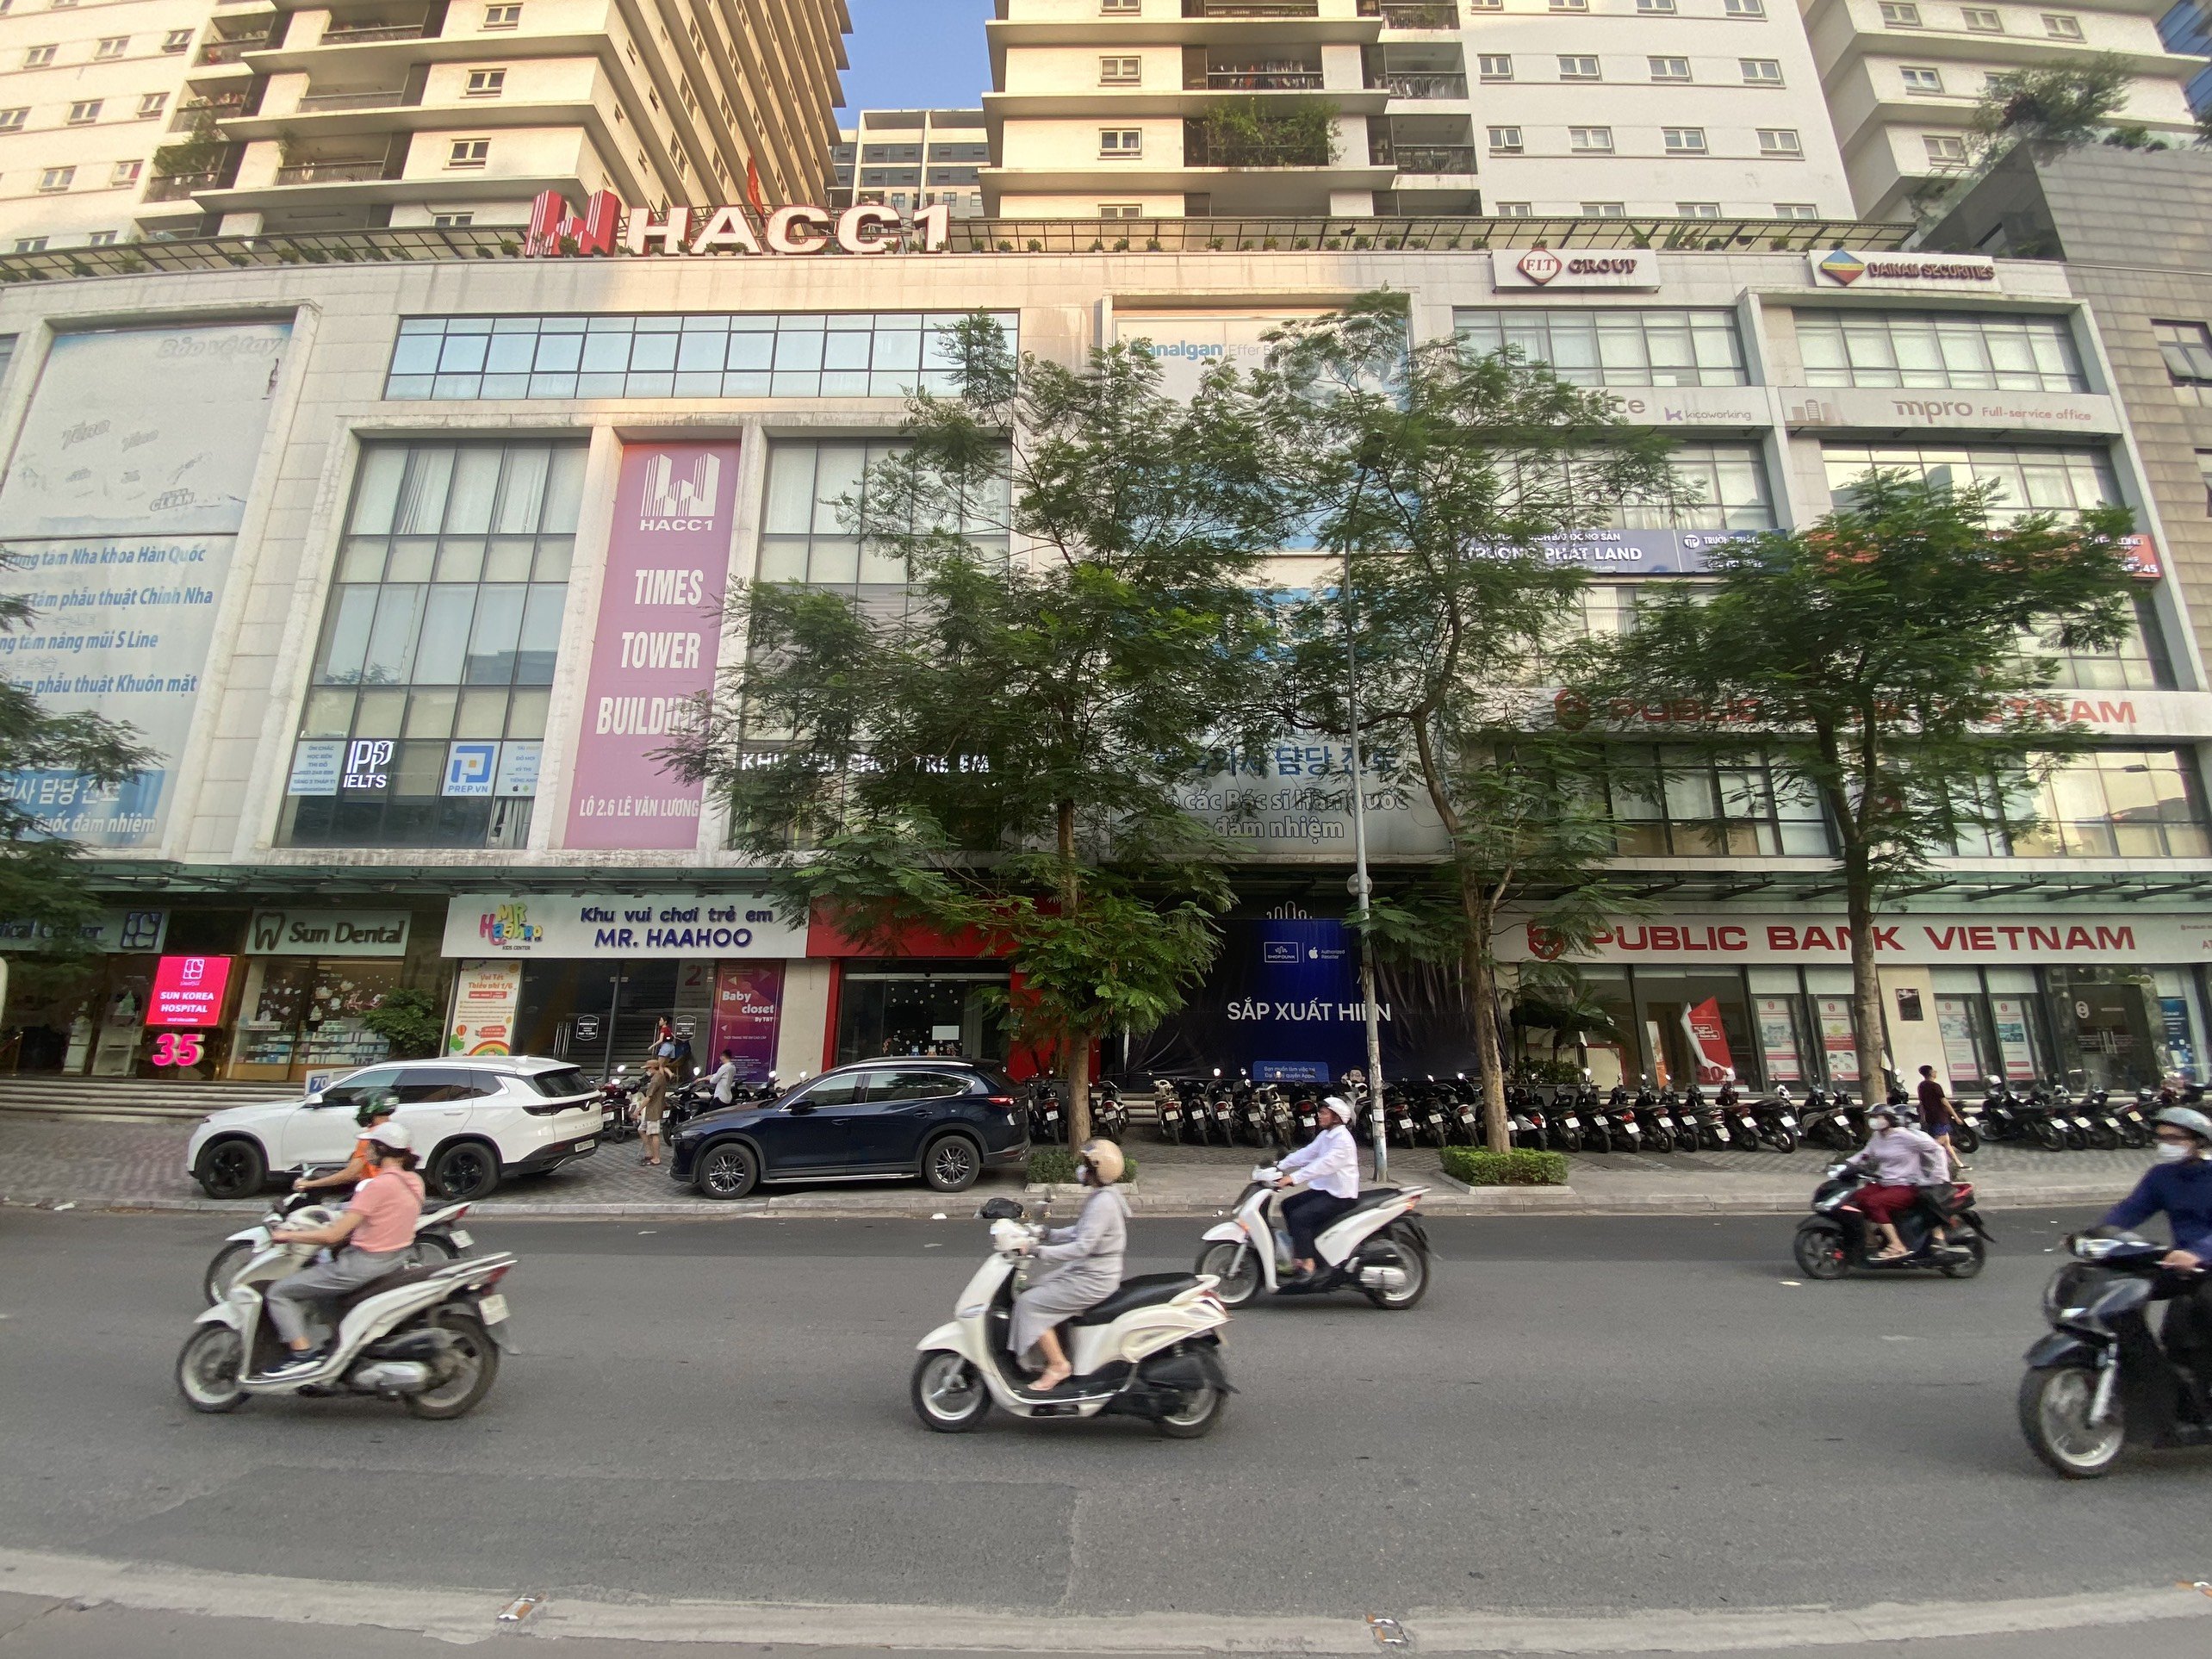 Chào thuê ngân hàng, siêu thị, showroom, trung tâm ngoại ngữ, bảo hành tại Times Tower Thanh Xuân 5